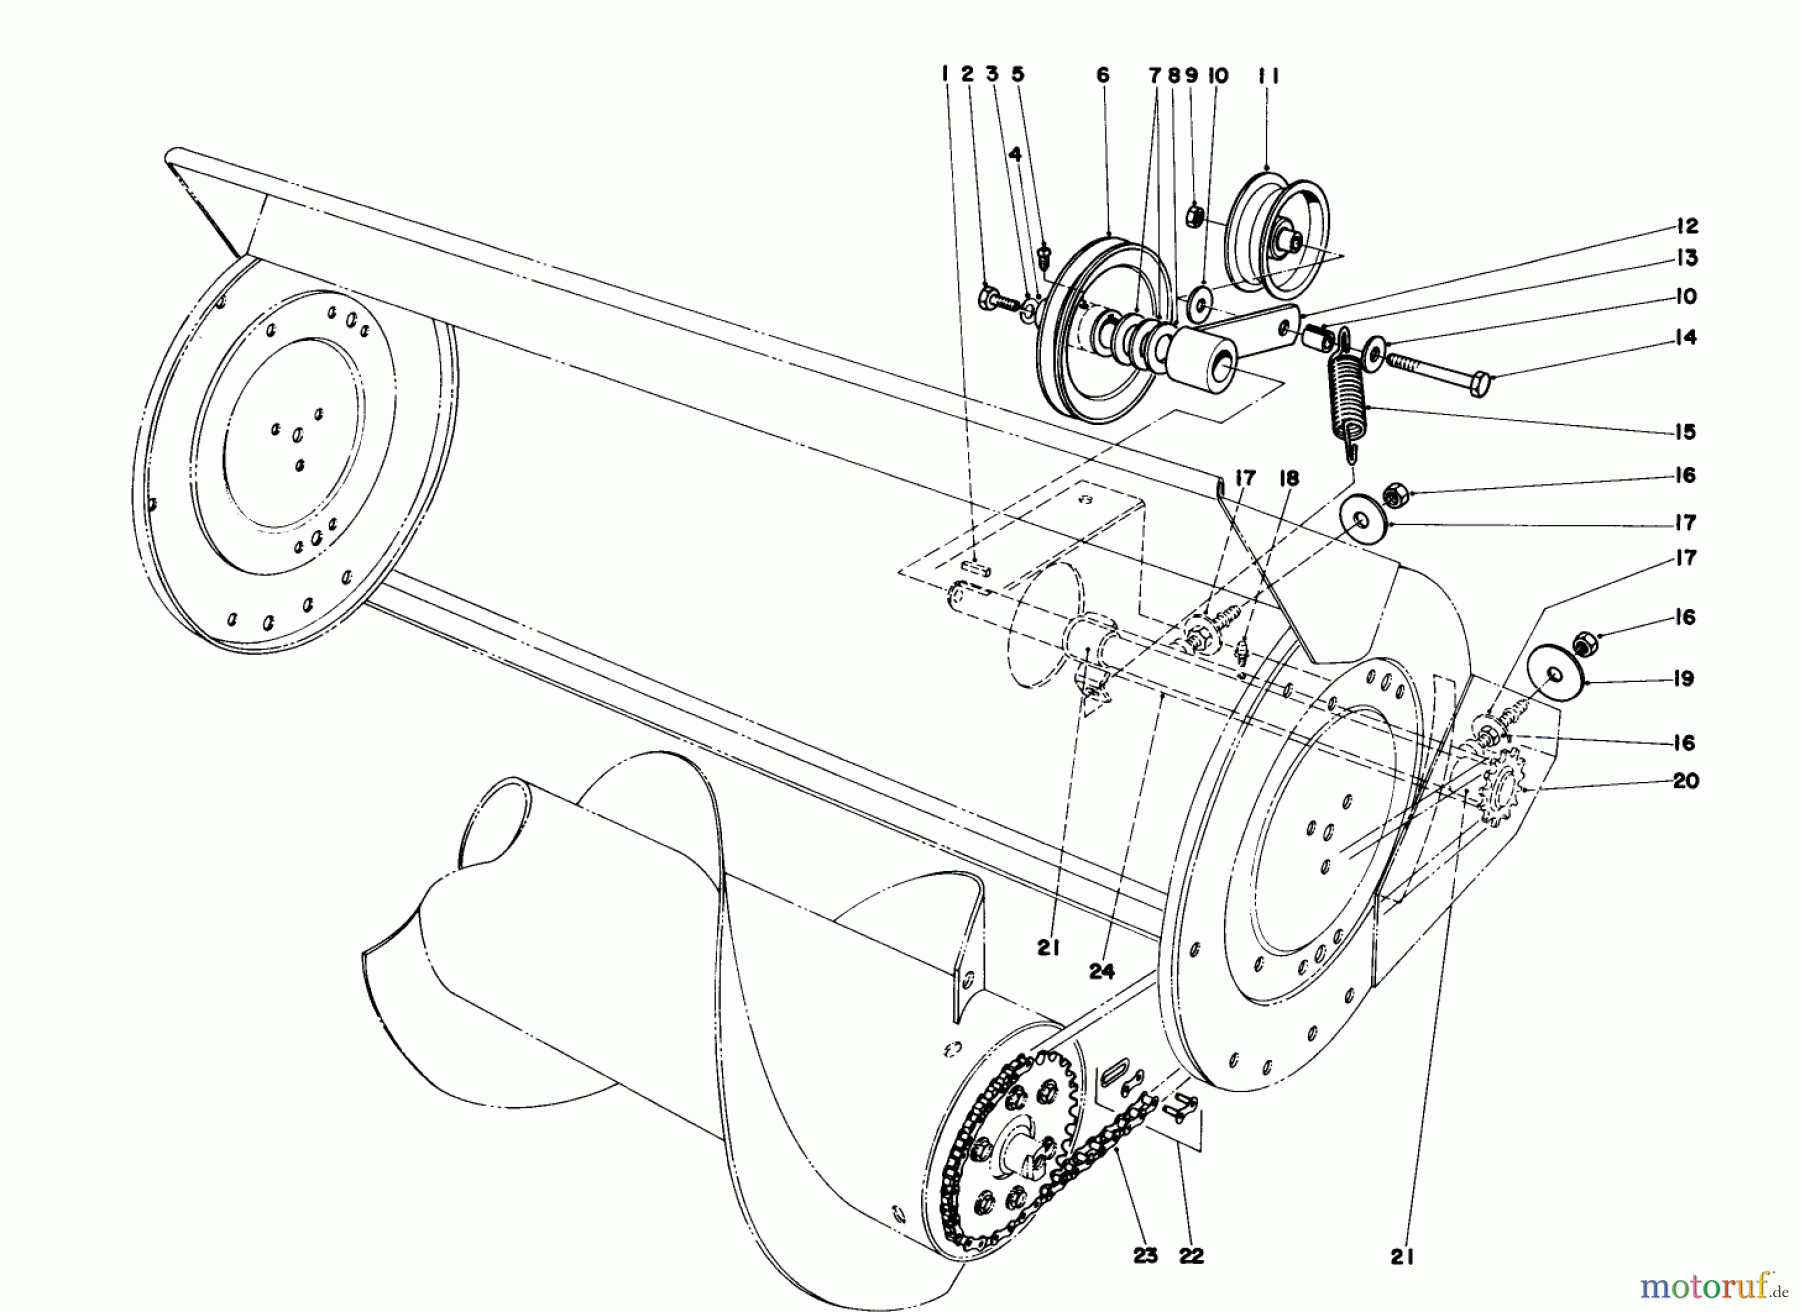  Toro Neu Mowers, Lawn & Garden Tractor Seite 1 57300 (8-32) - Toro 8-32 Front Engine Rider, 1980 (0000001-0999999) 36